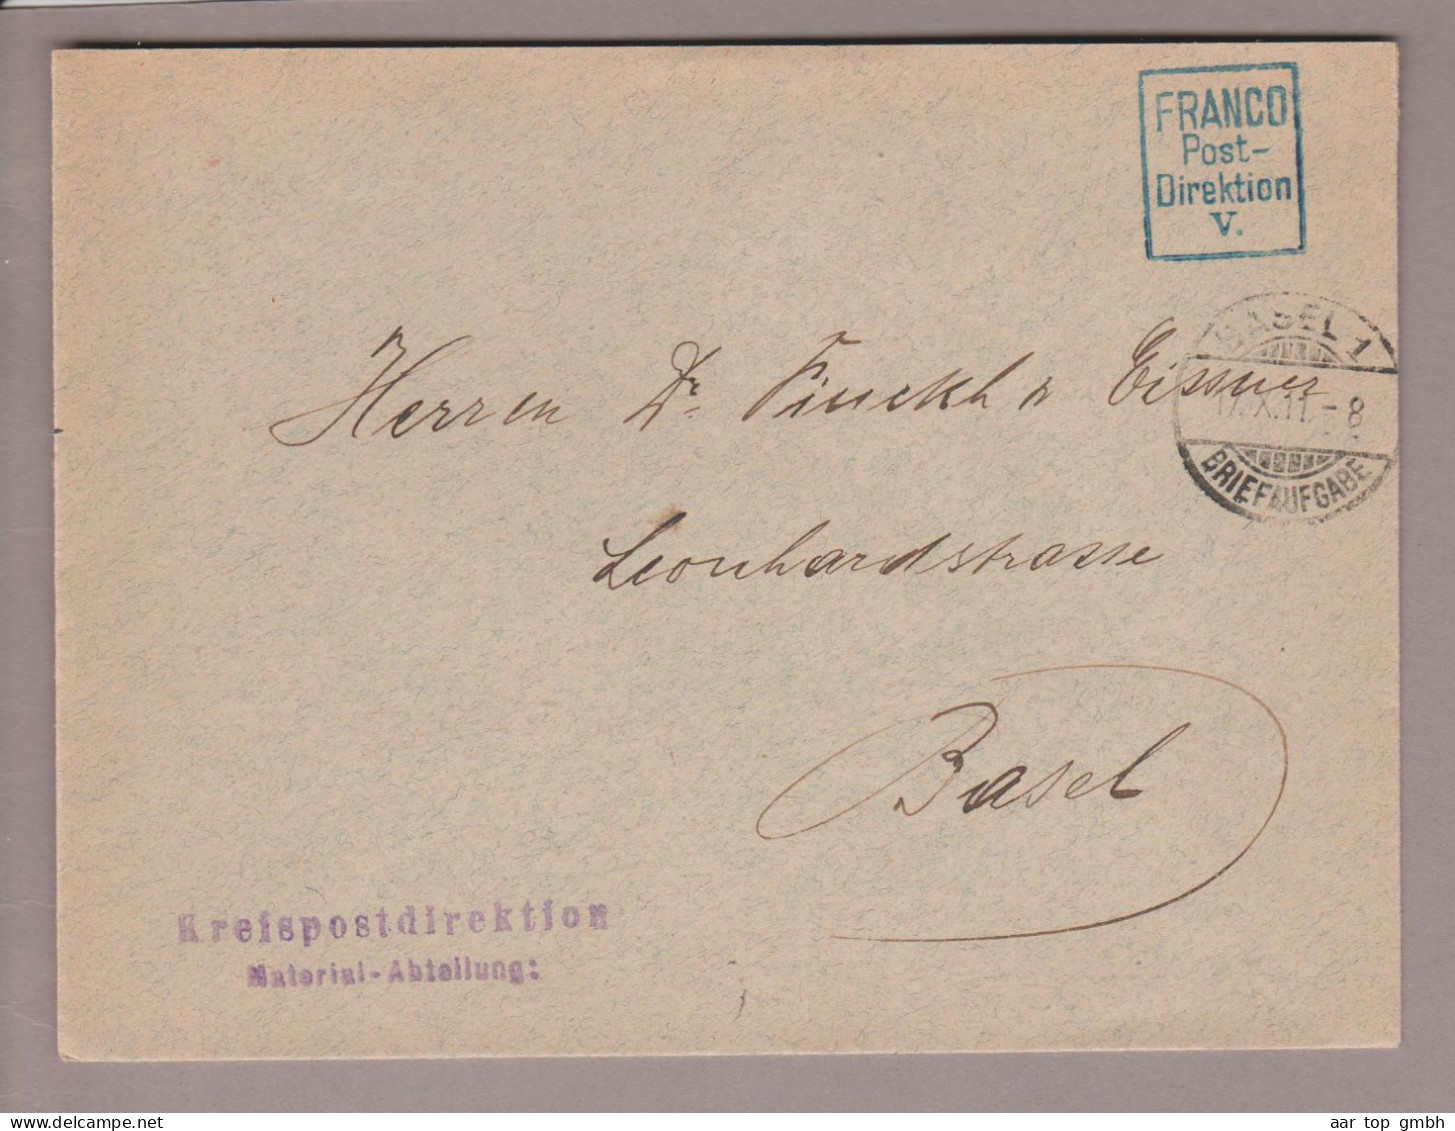 Schweiz Franco 1911-10-11 Basel1 Blauer 4-eckiger "Franco Postdirektion V" Stempel Auf Ortsbrief - Postage Meters